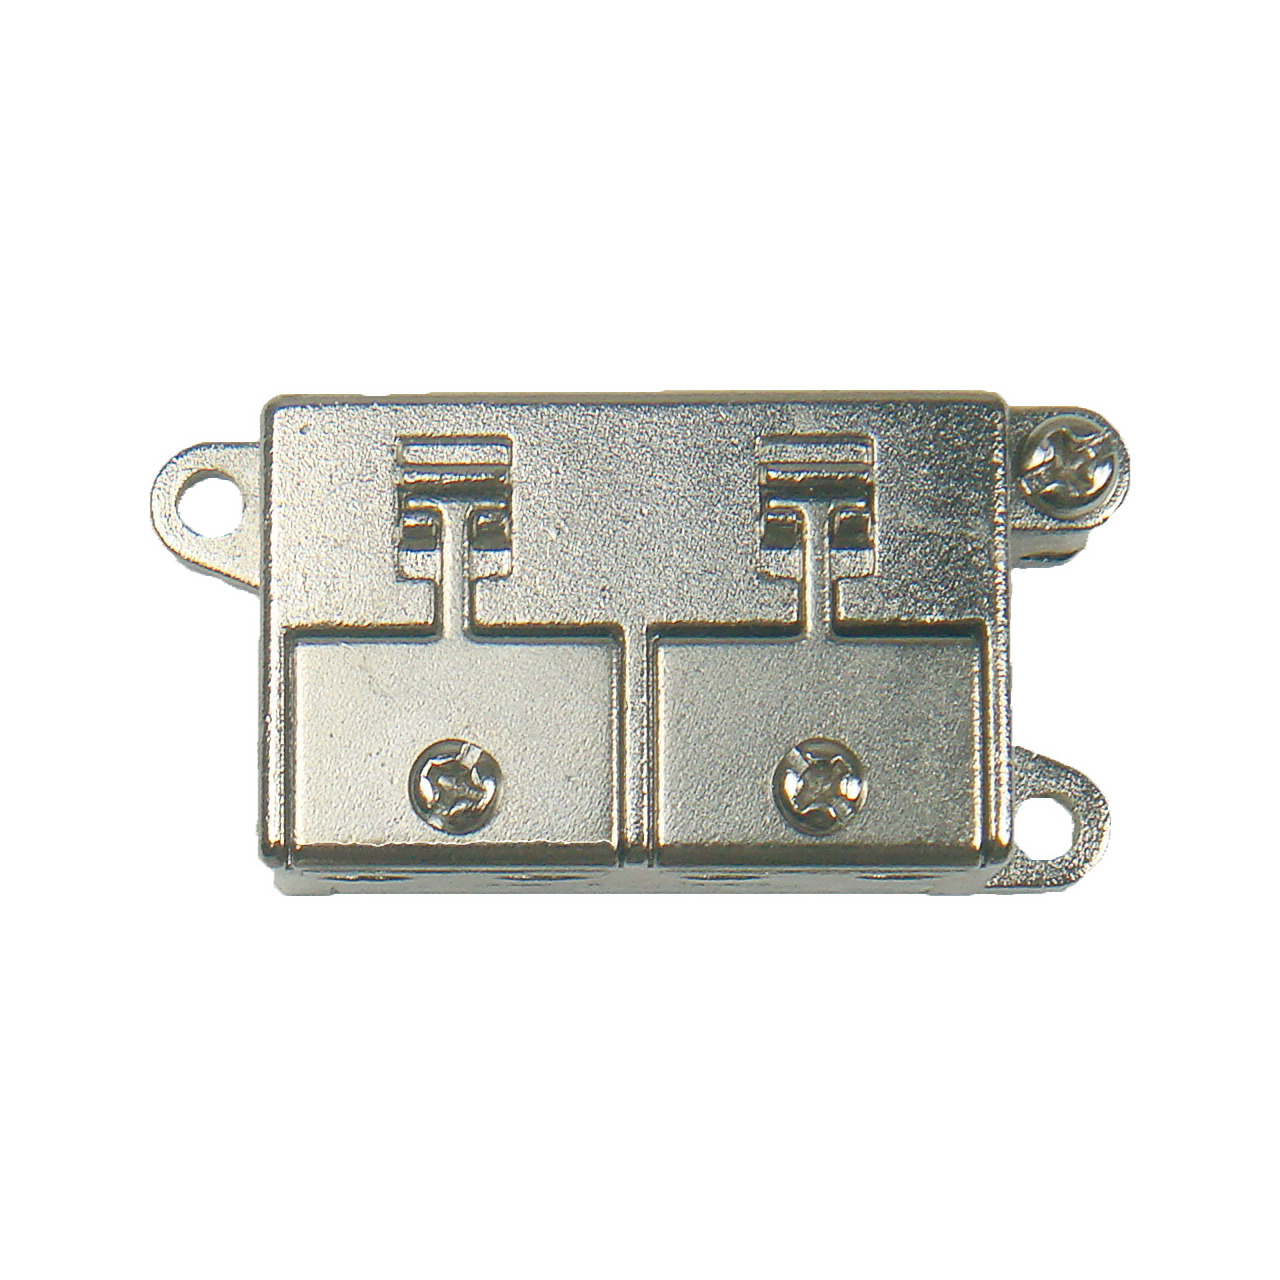 DUR-line 2-fach Mini-BK-Sat-Verteiler- kleine Bauform- ideal für Unterputzmontage (Unterputzdosen)